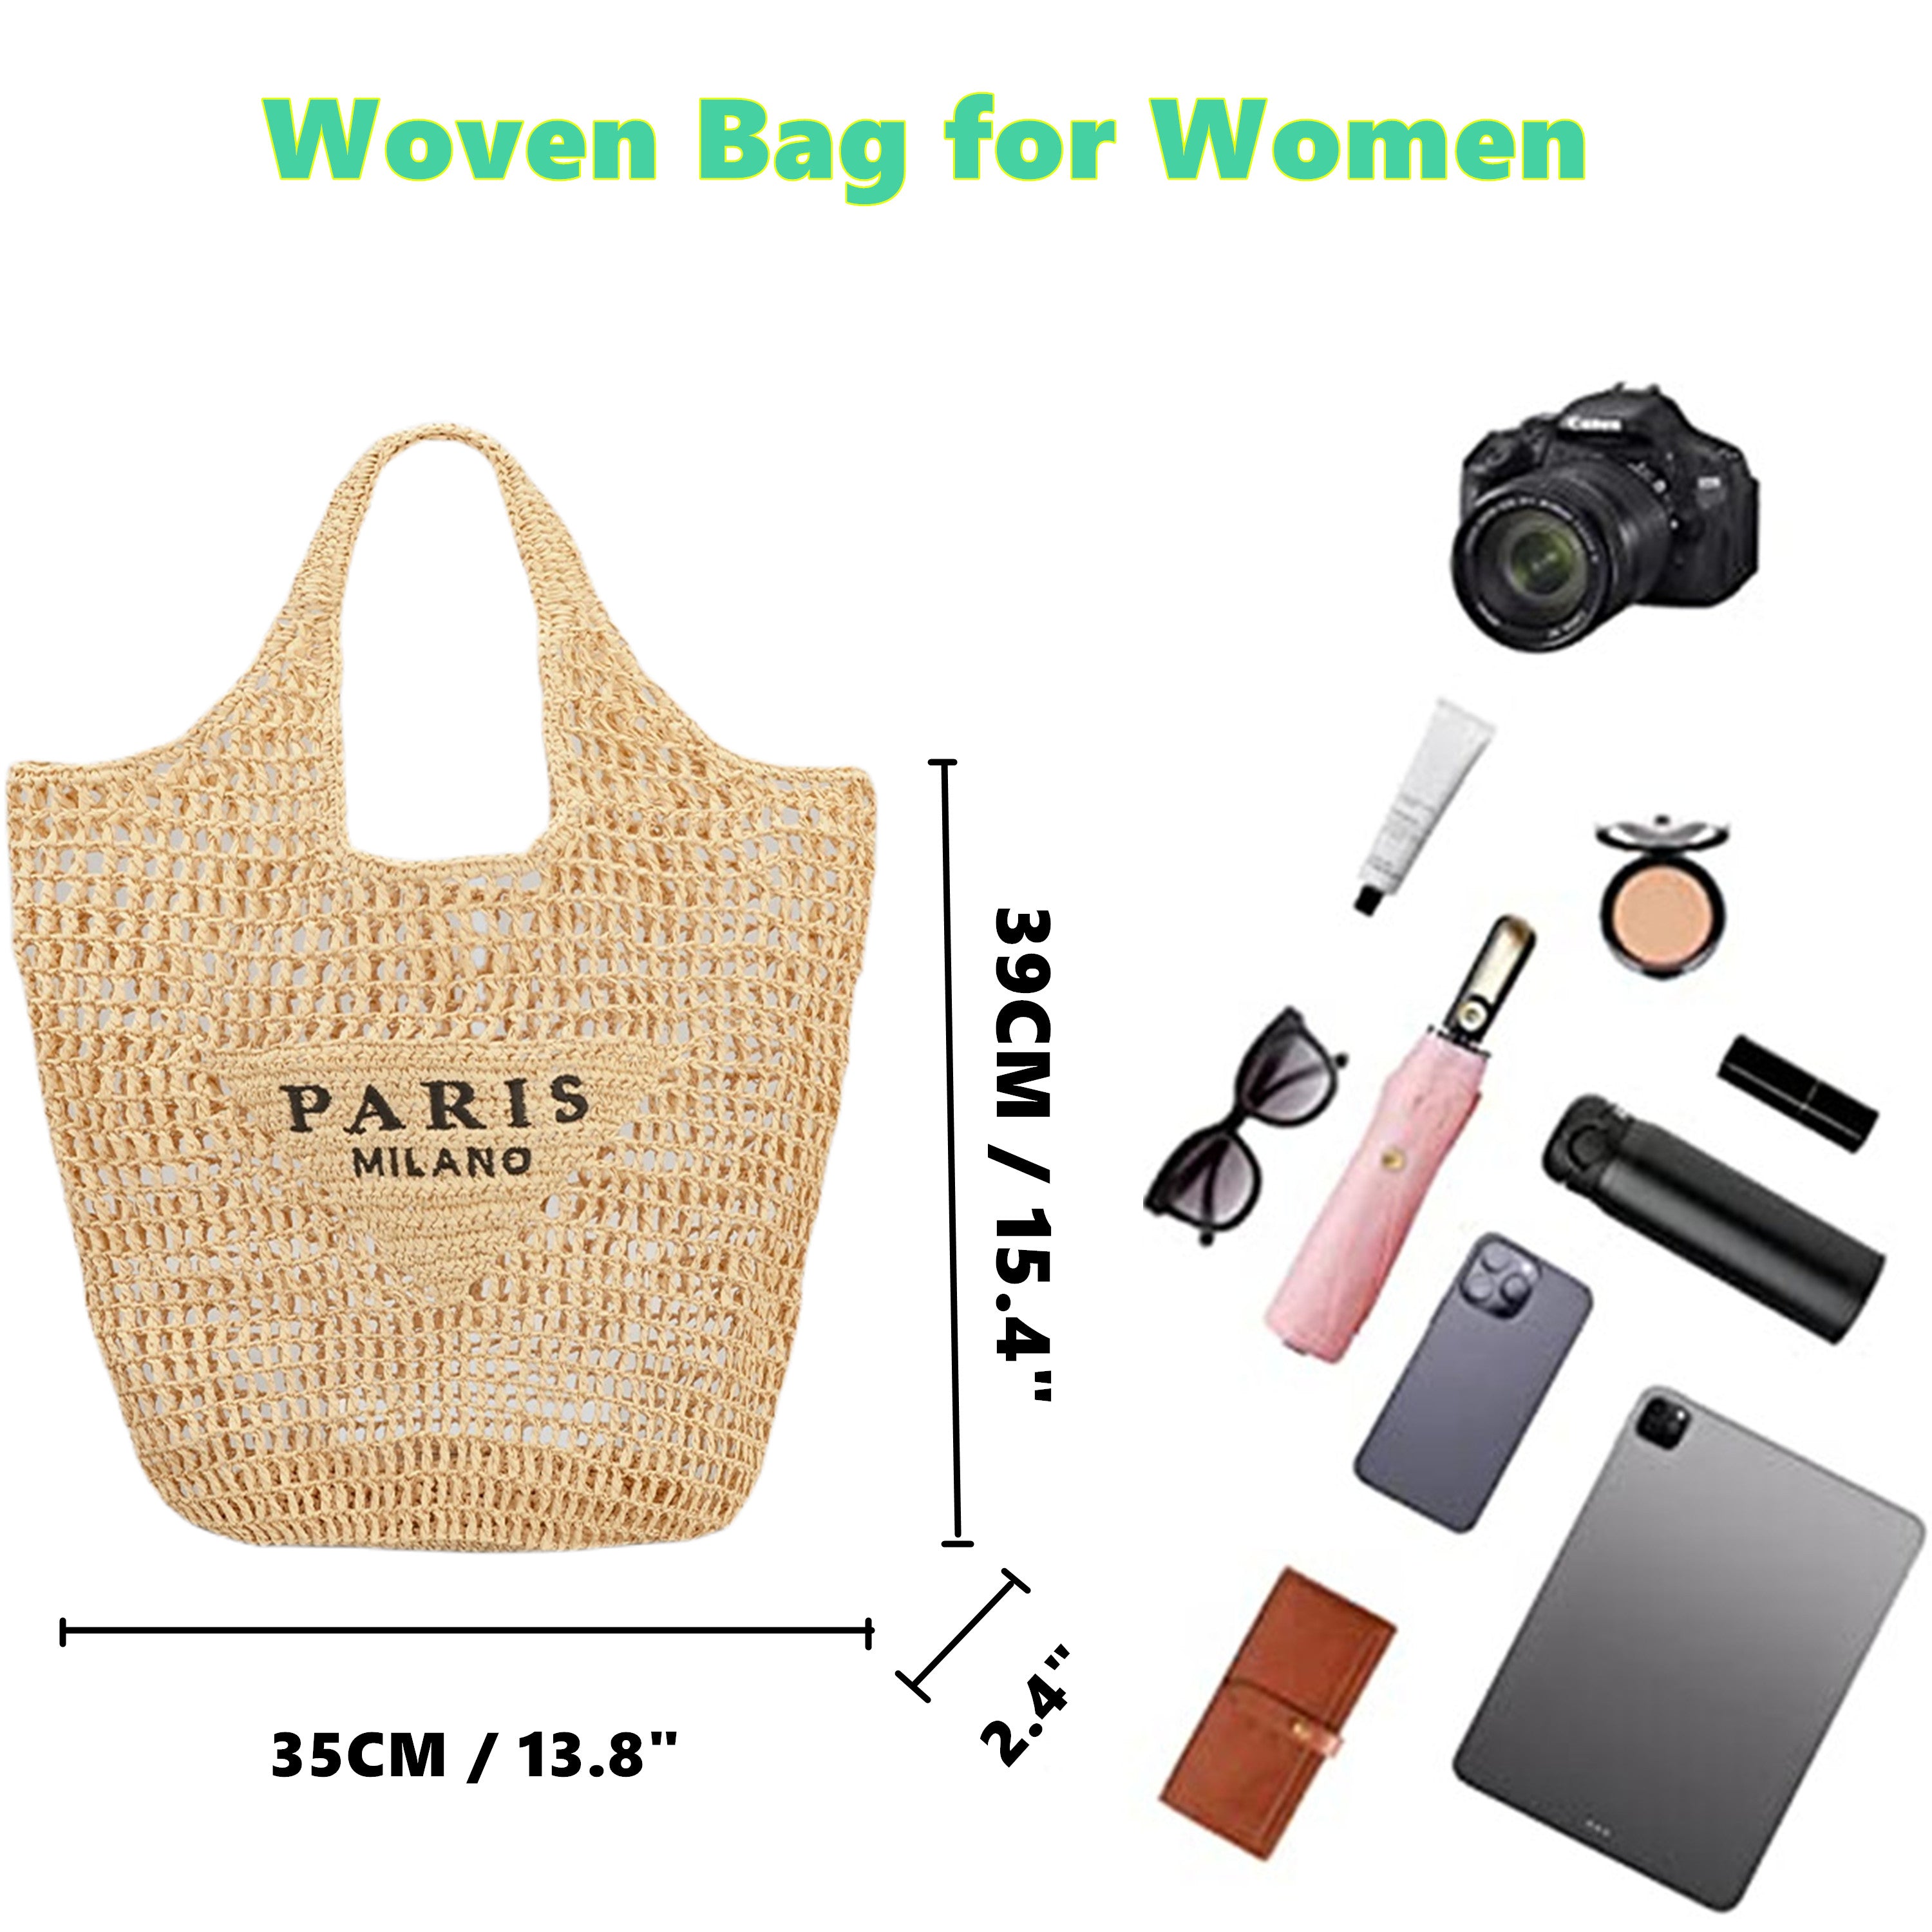 Straw Tote Bag for women,Mesh Hollow Woven Tote Bag,Handbag Beach Bag,Paris Hobo Bag,Large Shoulder Travel Tote Bag